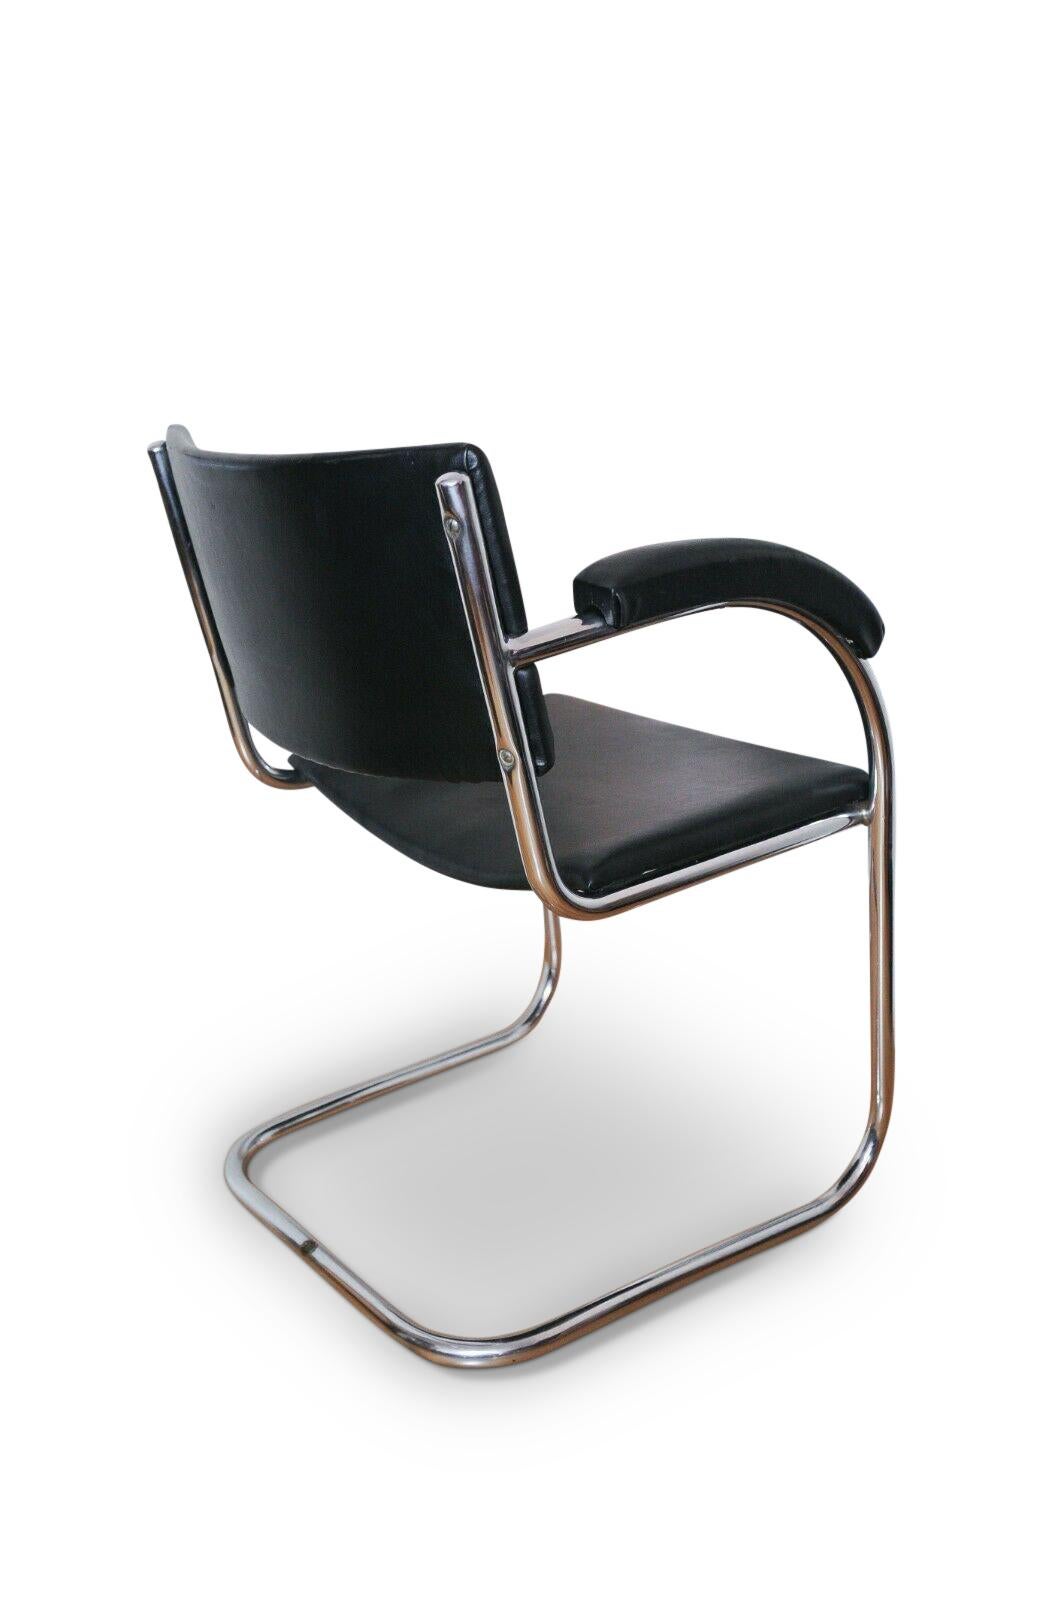 Bauhaus Iconic SP9 Chrome Cantilever Chair by PEL 'Practical equipment ltd' bauhaus For Sale